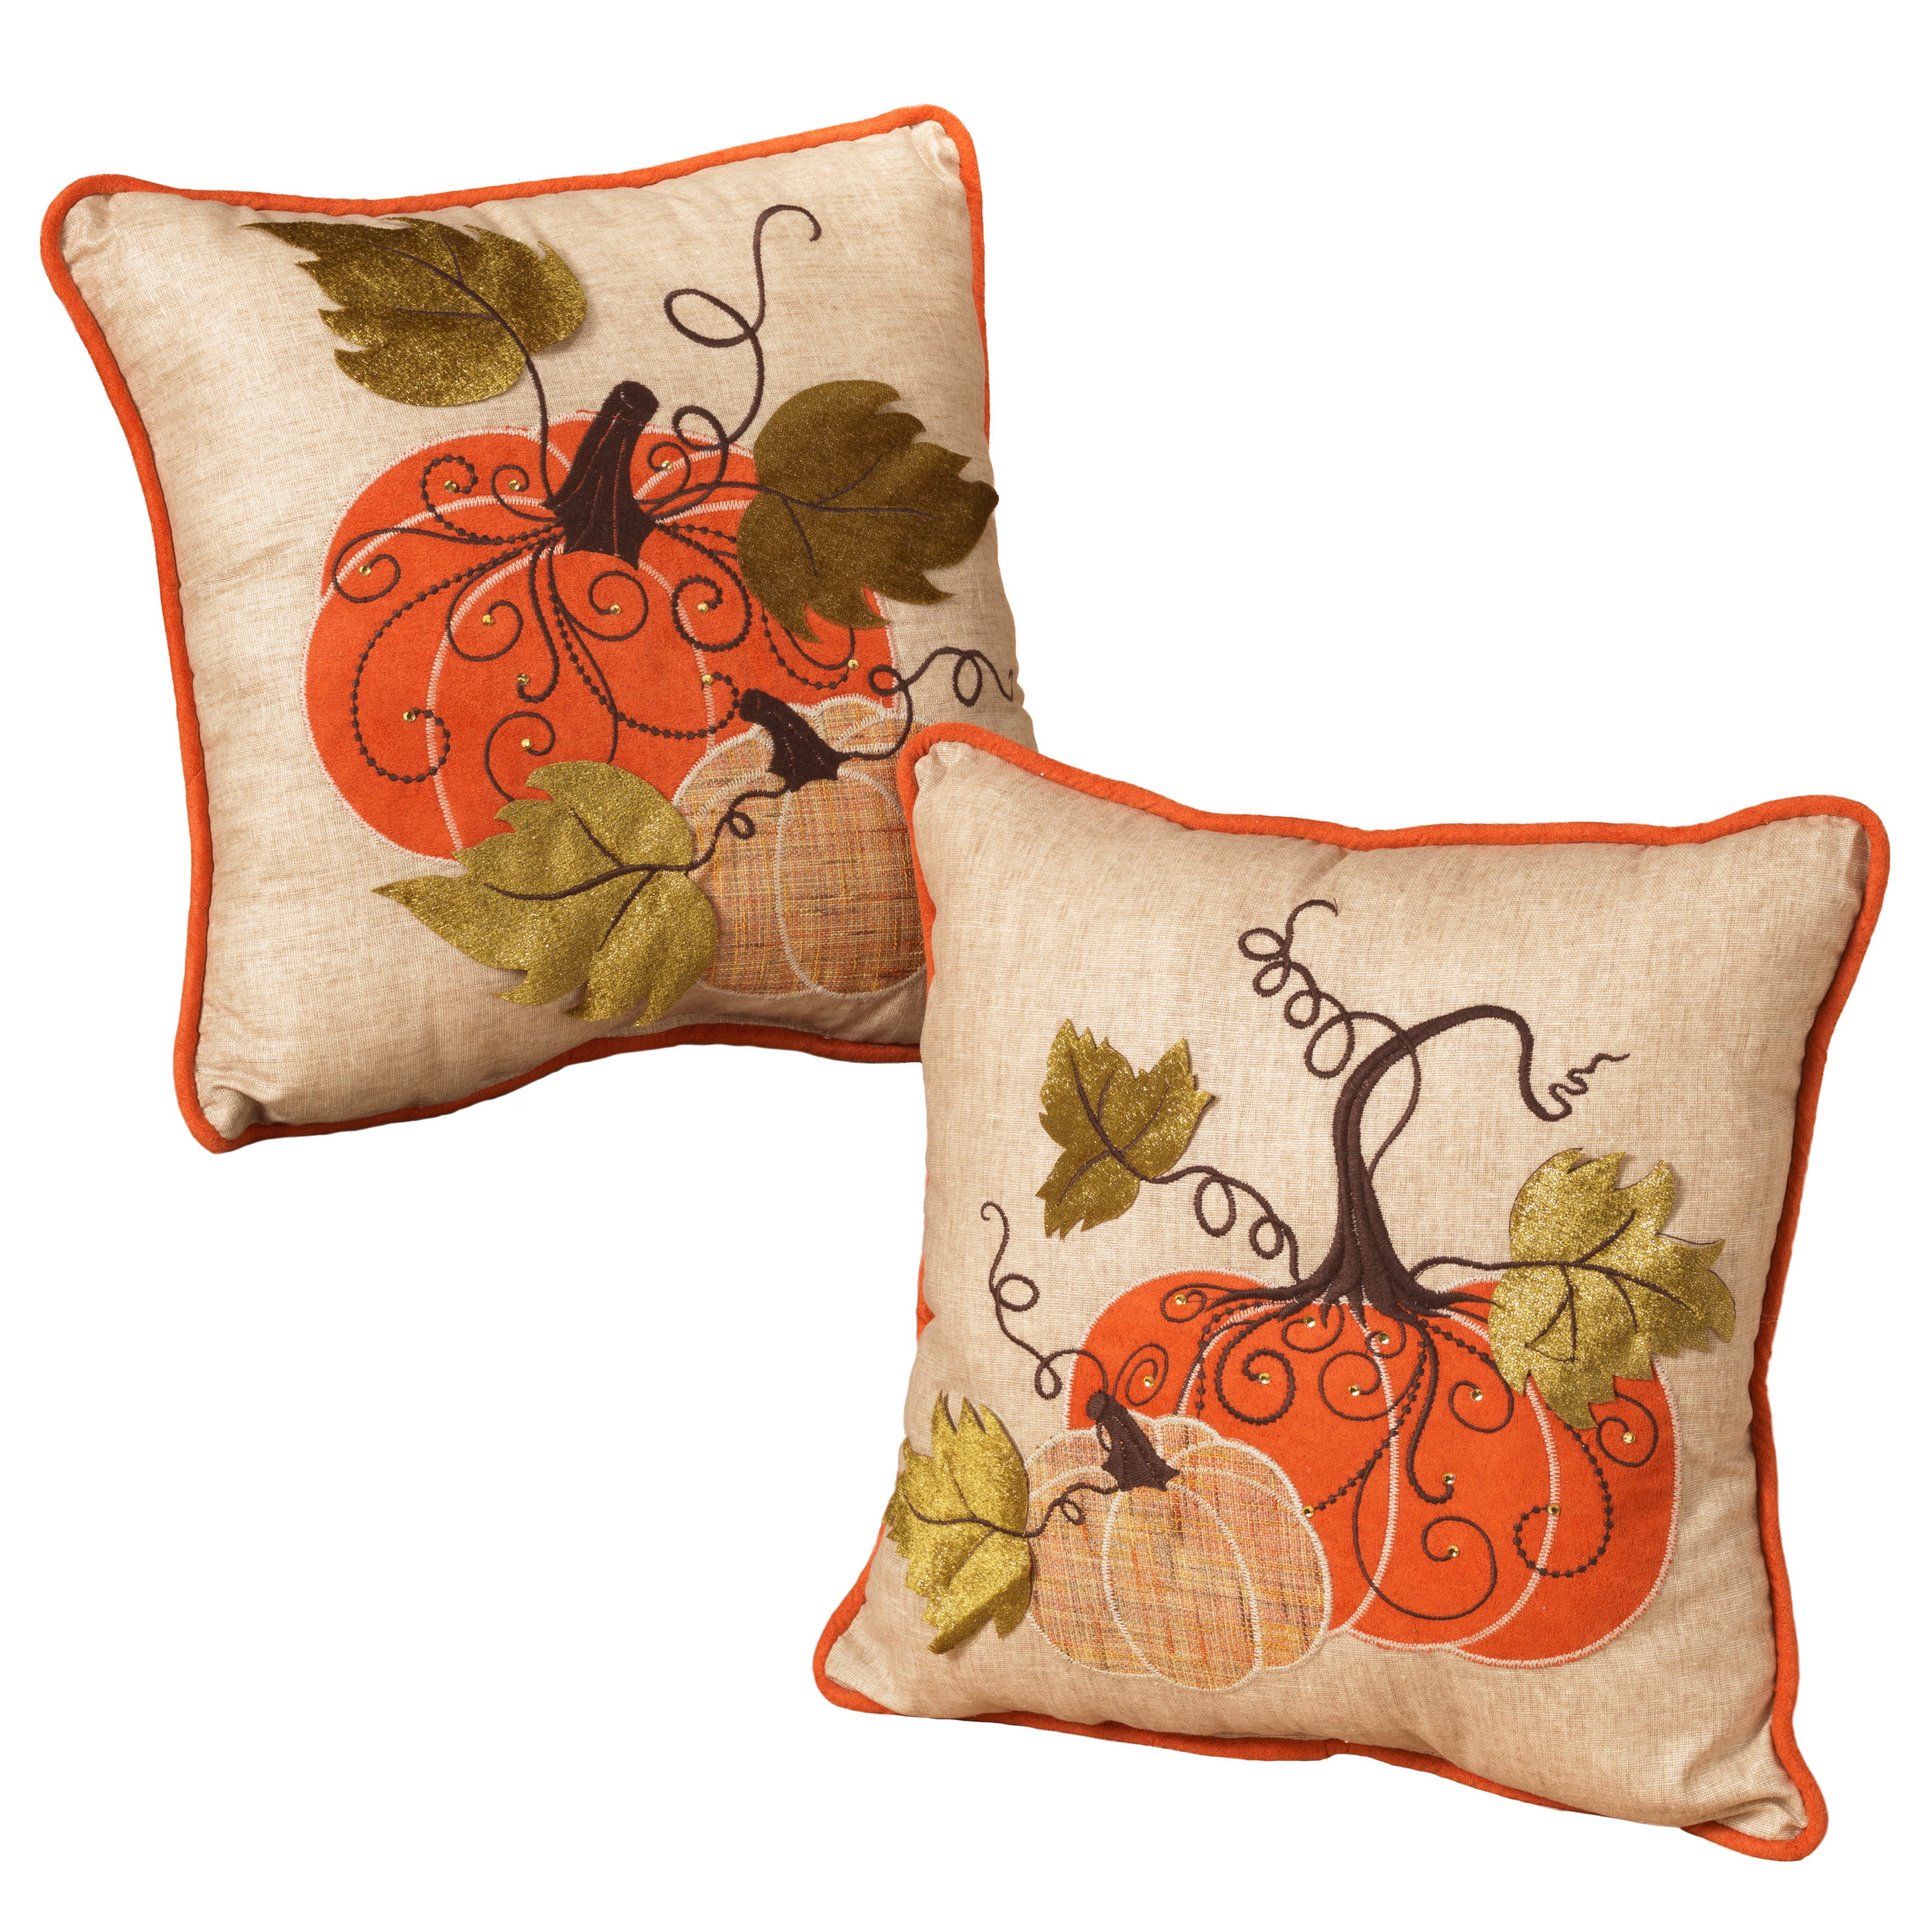 Embroidered Pumpkin Throw Pillows Set of 2 Walmart com Walmart com